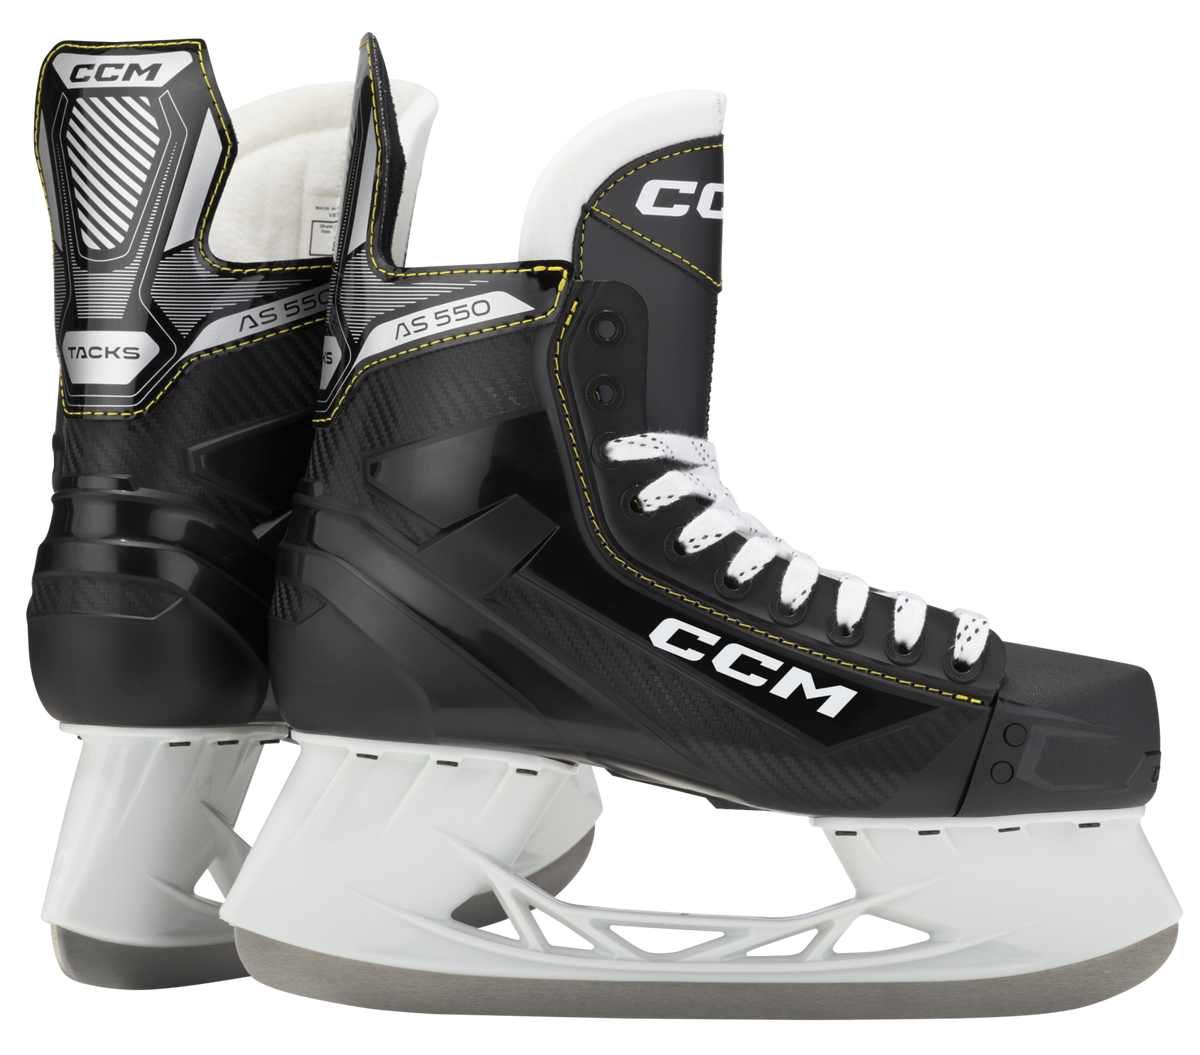 CCM Tacks AS-550 patins de hockey intermédiaire